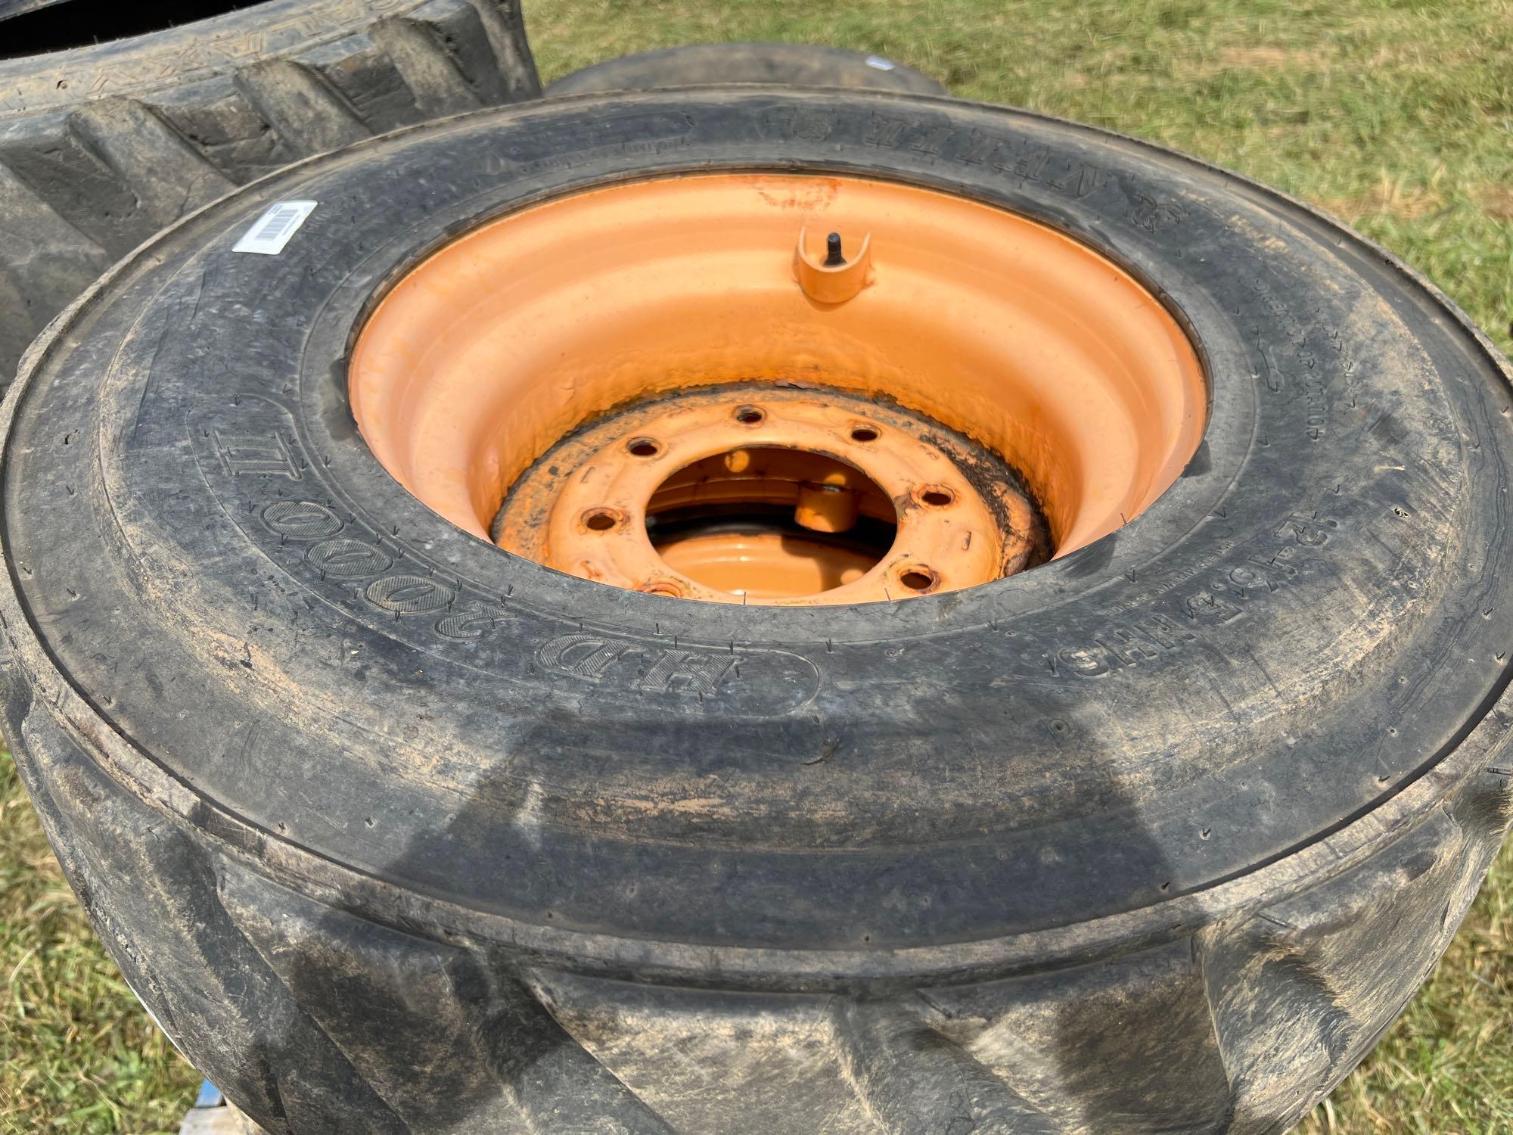 Image for 8 tires- 1 set of 4 Foam Filled Skid Steer Tires 12x16.5, 1 set of regular 